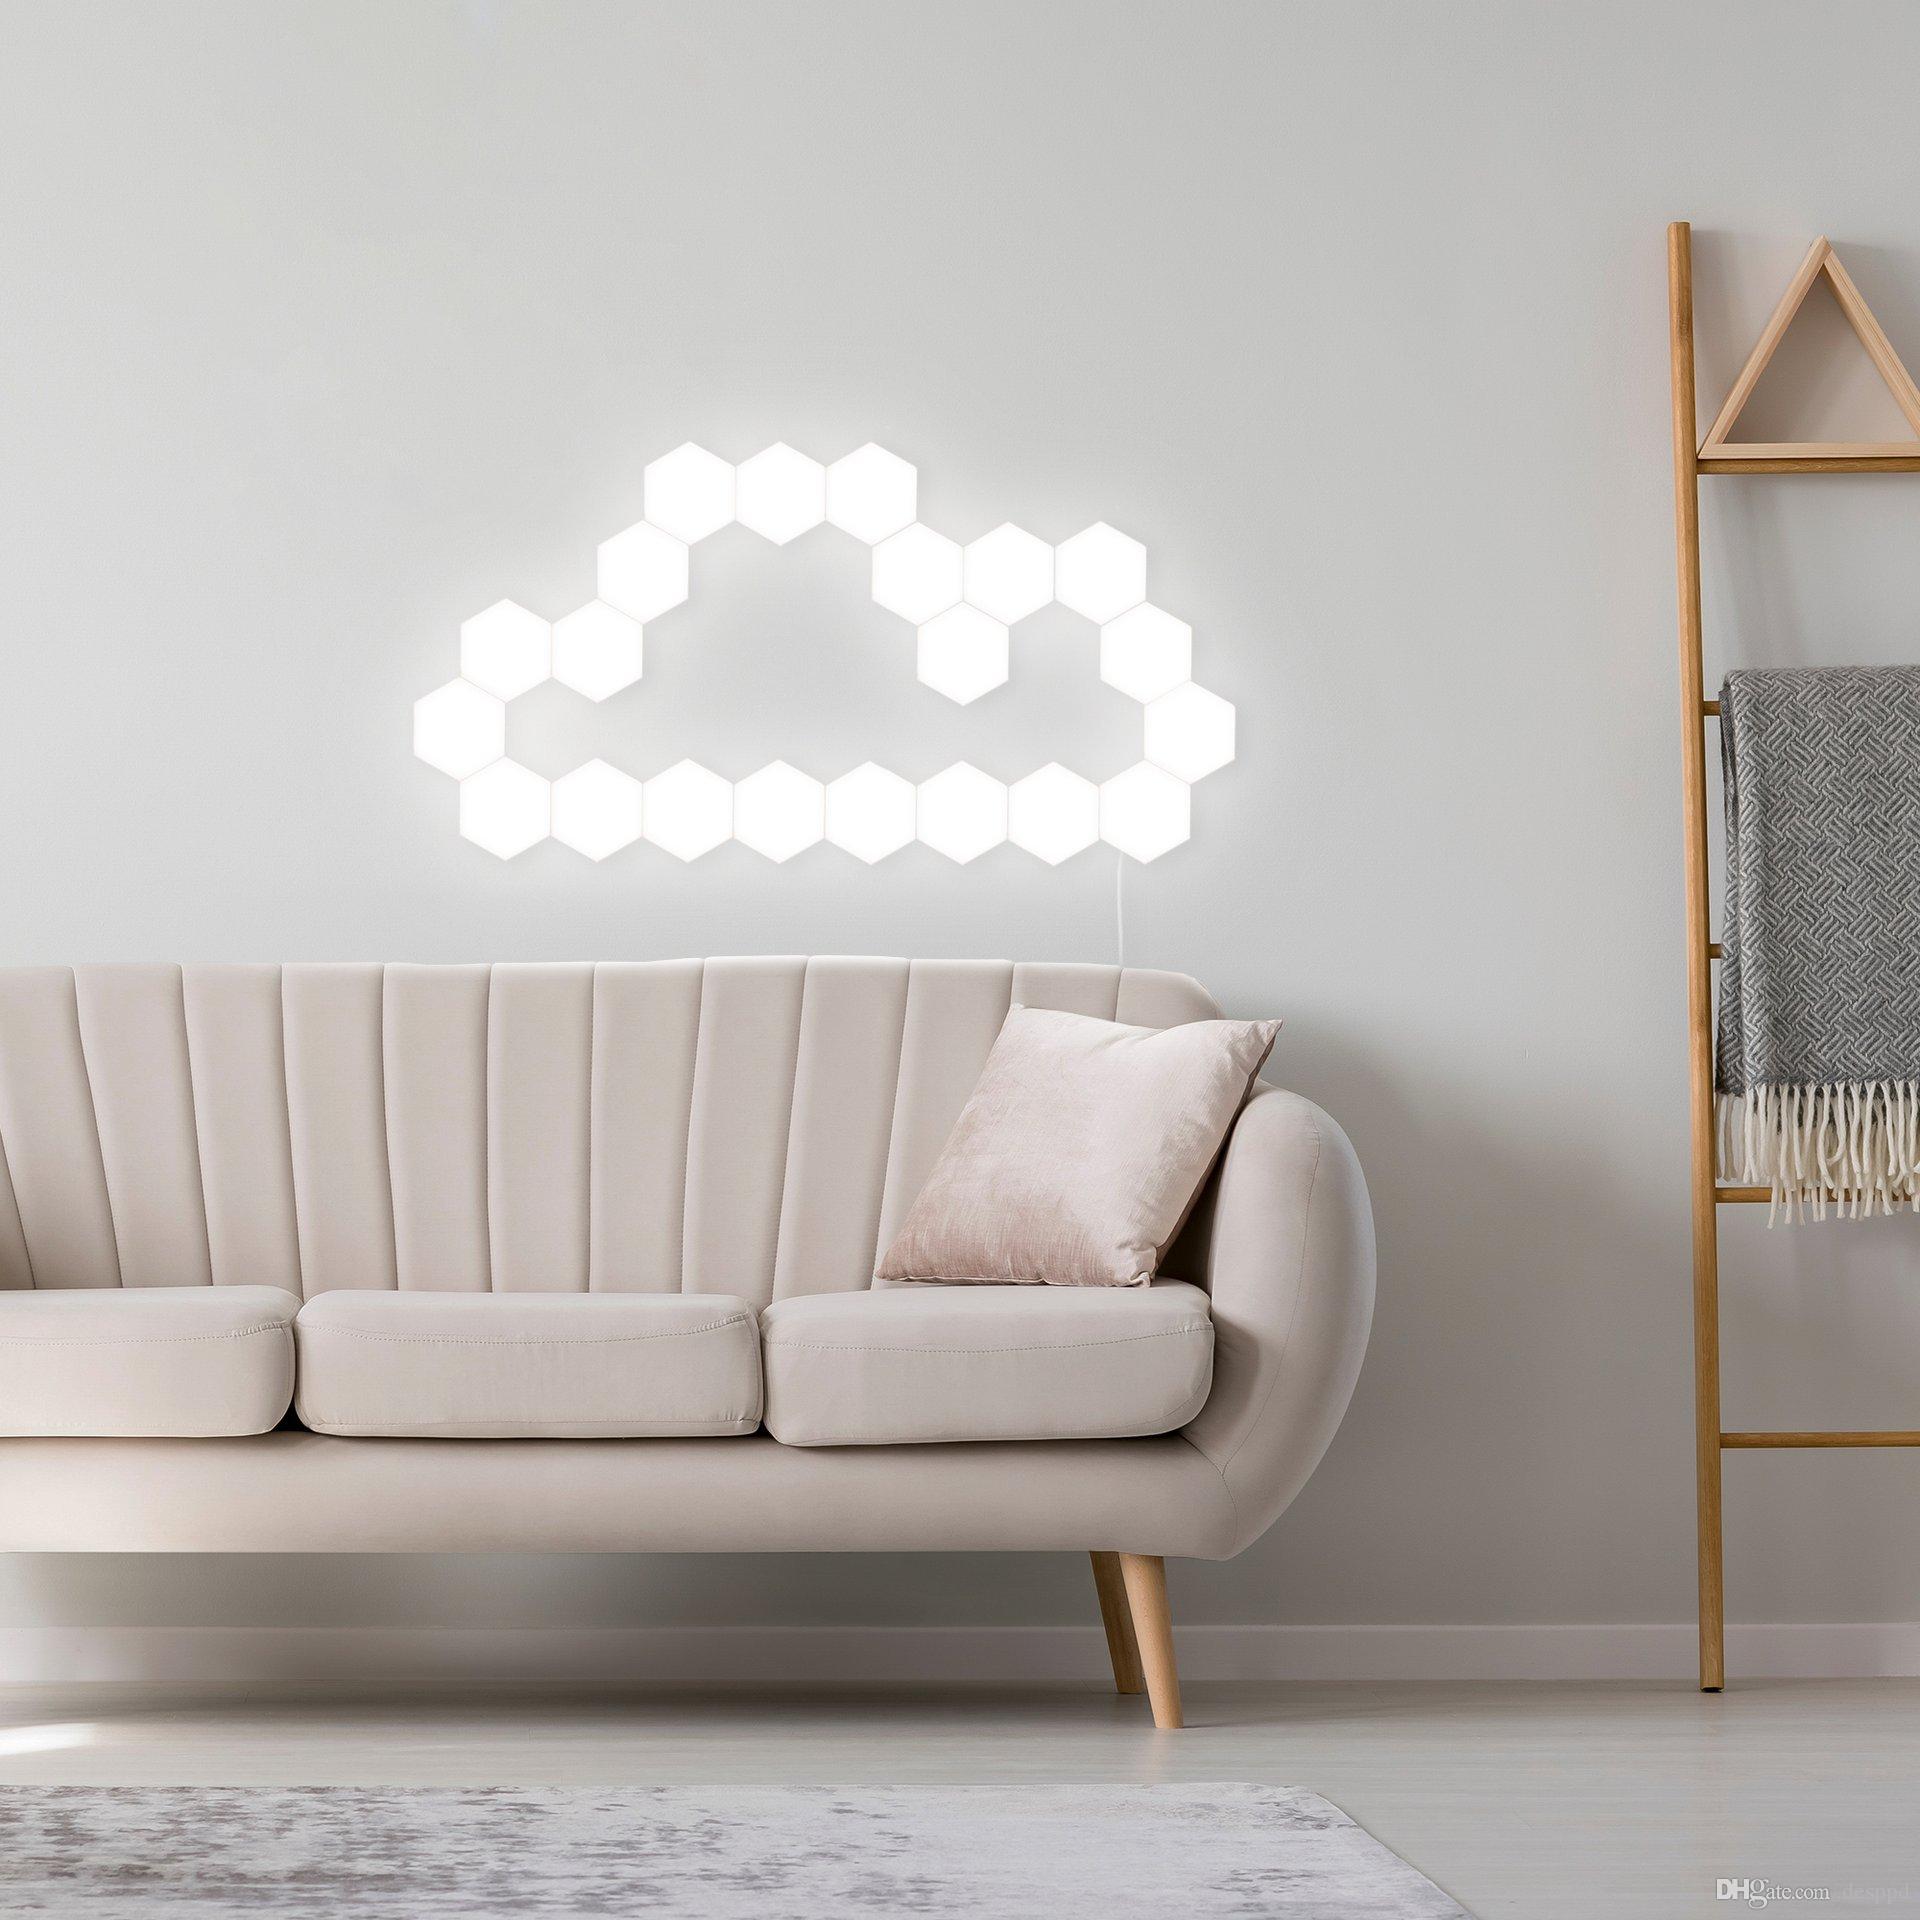 Bạn có thể sắp xếp các hình lục giác riêng lẻ thành hình một đám mây trên bức tường sofa phòng khách.